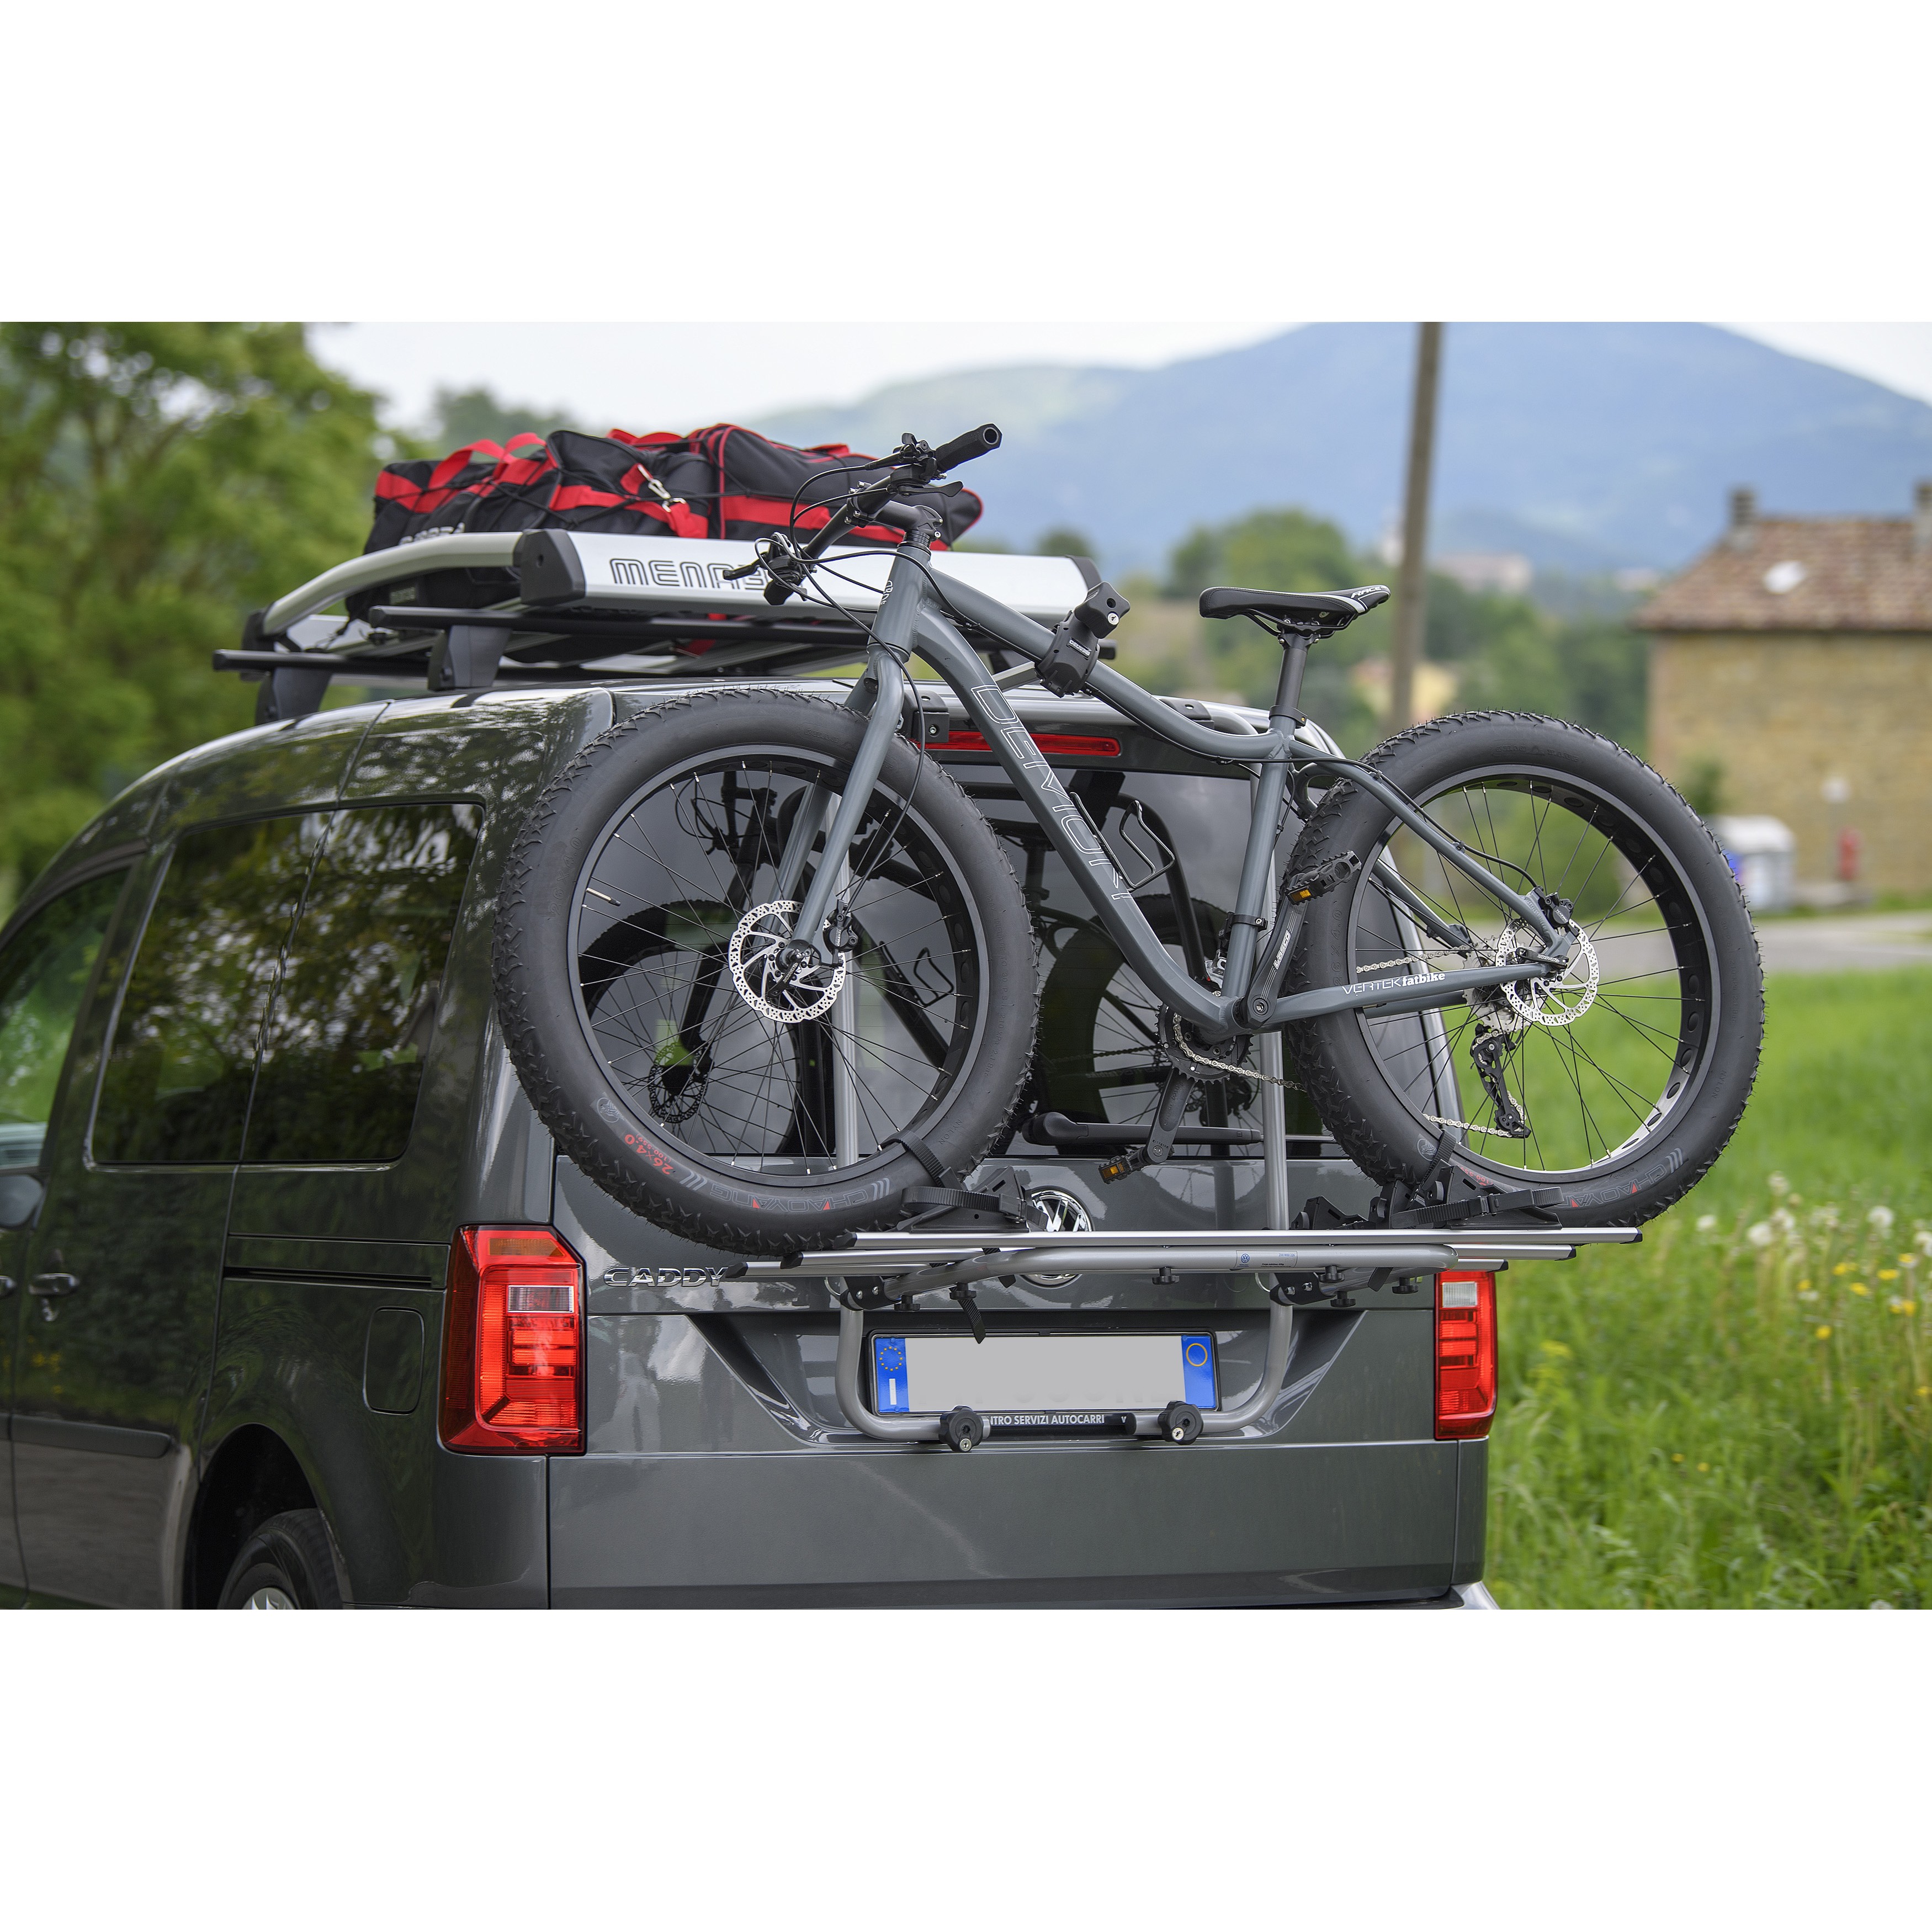 Dinkarville Oblongo camisa ▷ Portabicis de Portón Trasero Menado Shadow Volkswagen Caddy 3 Bicis